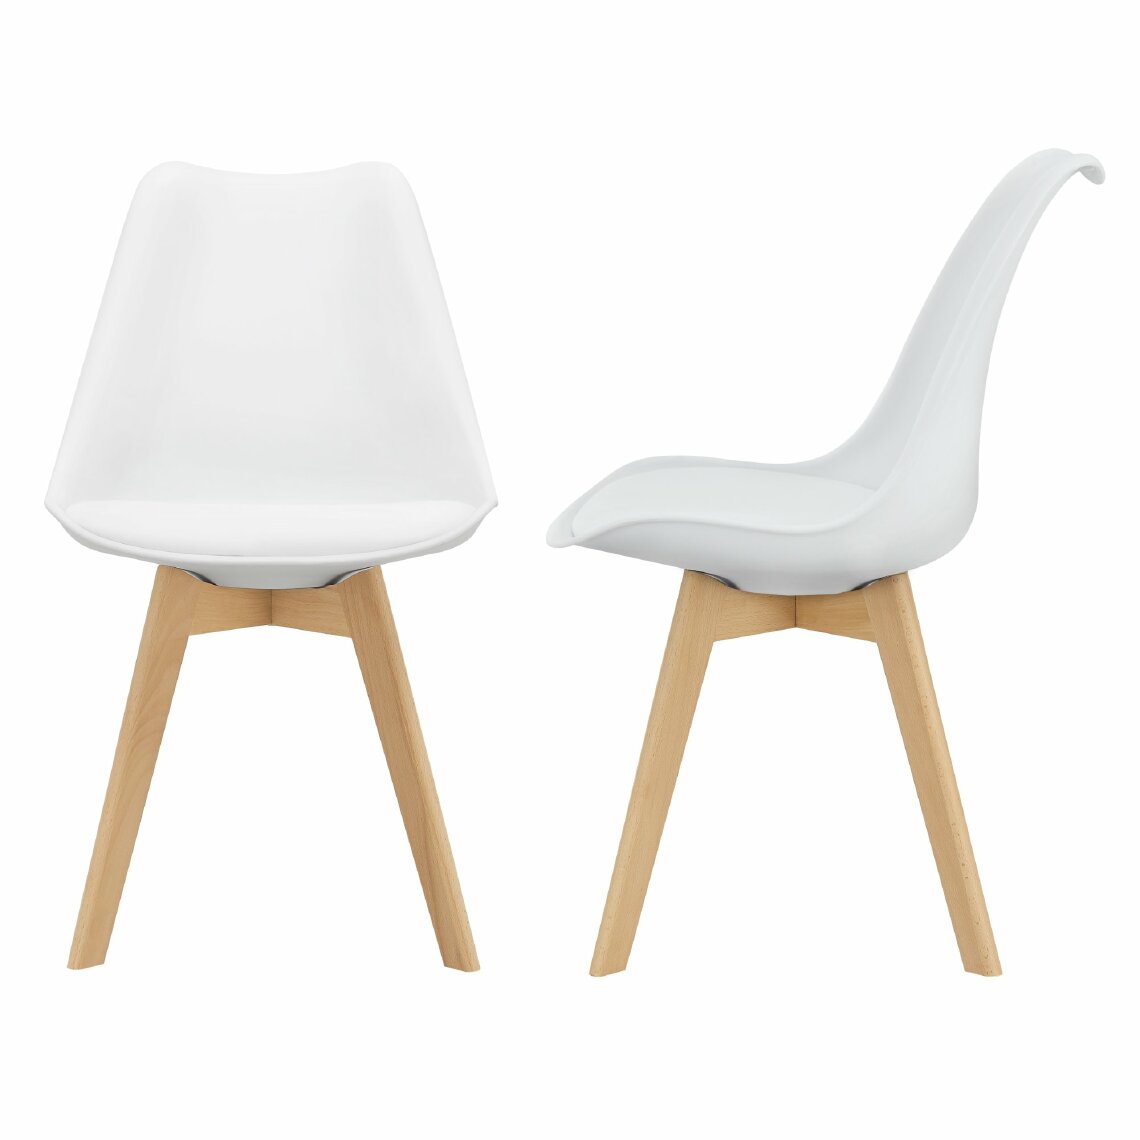 Helloshop26 - Lot de 2 chaises siège de salle à manger scandinave cuisine plastique similicuir blanc 03_0002768 - Chaises